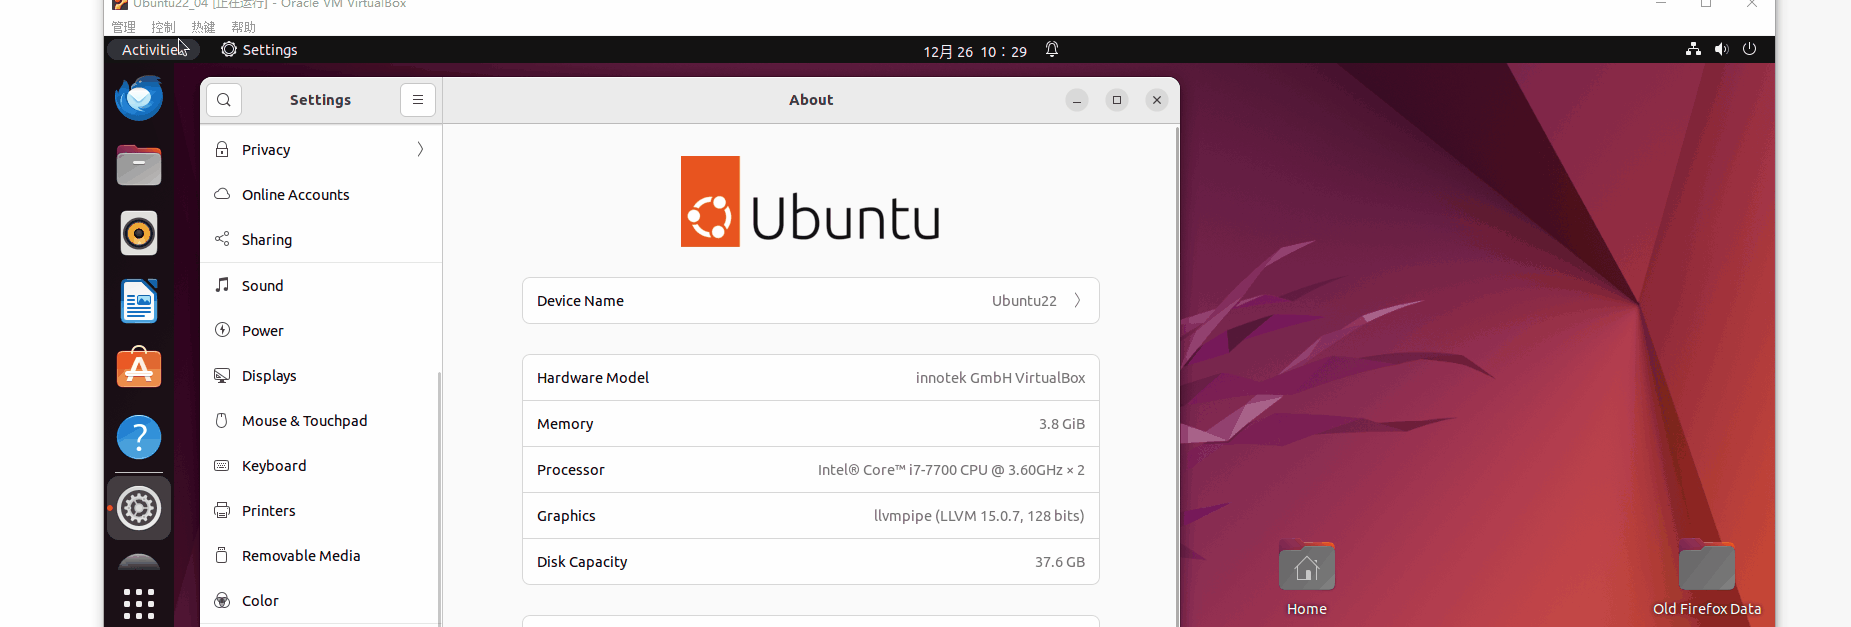 virtualBox 在ubuntu 22.04 中自动安装安装增强功能不生效的解决方法